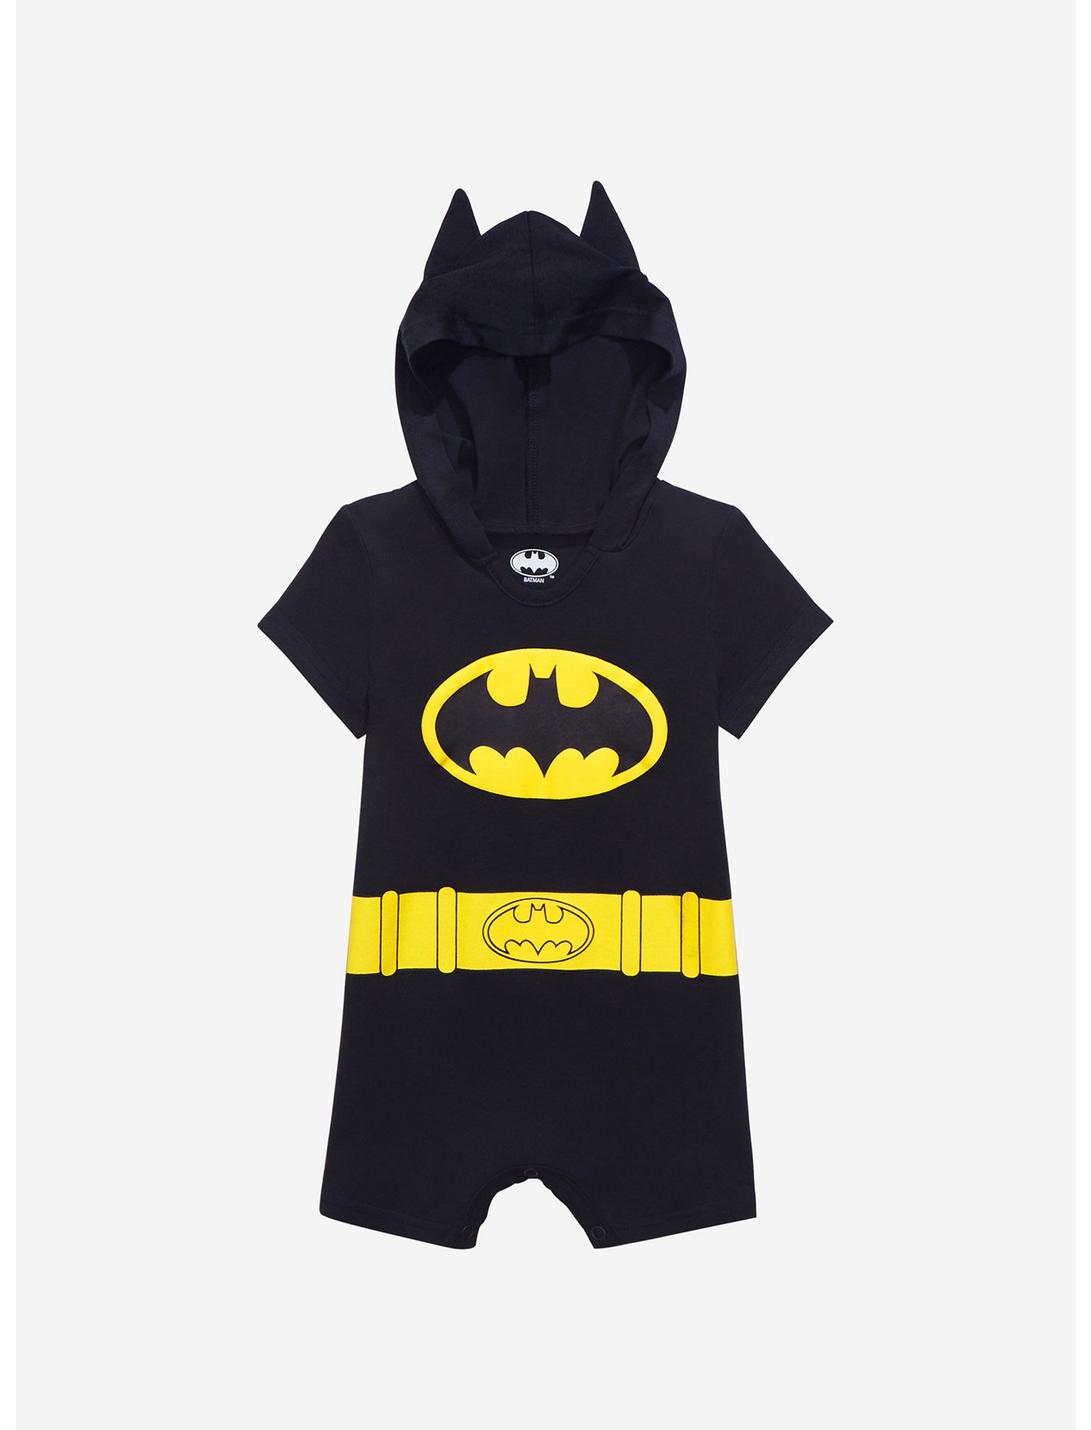 DC Comics Batman Outfit Infant One-Piece - BoxLunch Exclusive, BLACK, hi-res